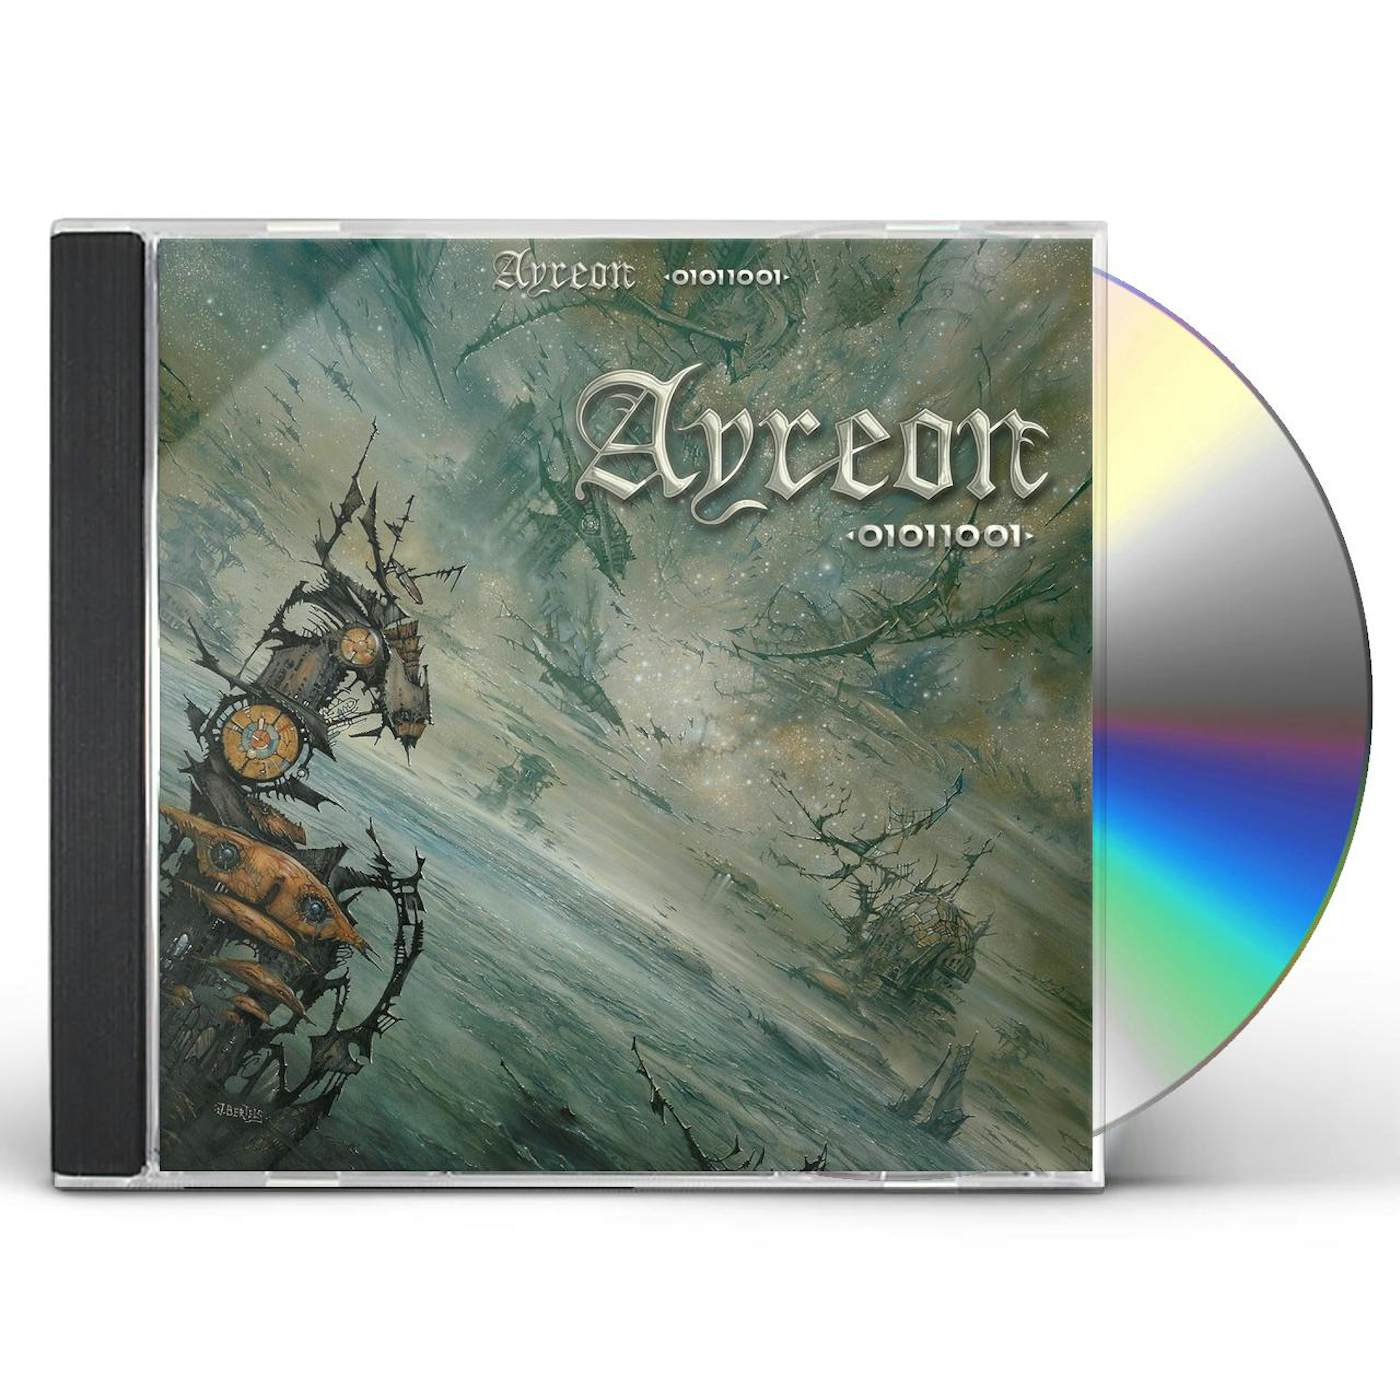 Ayreon 01011001 CD